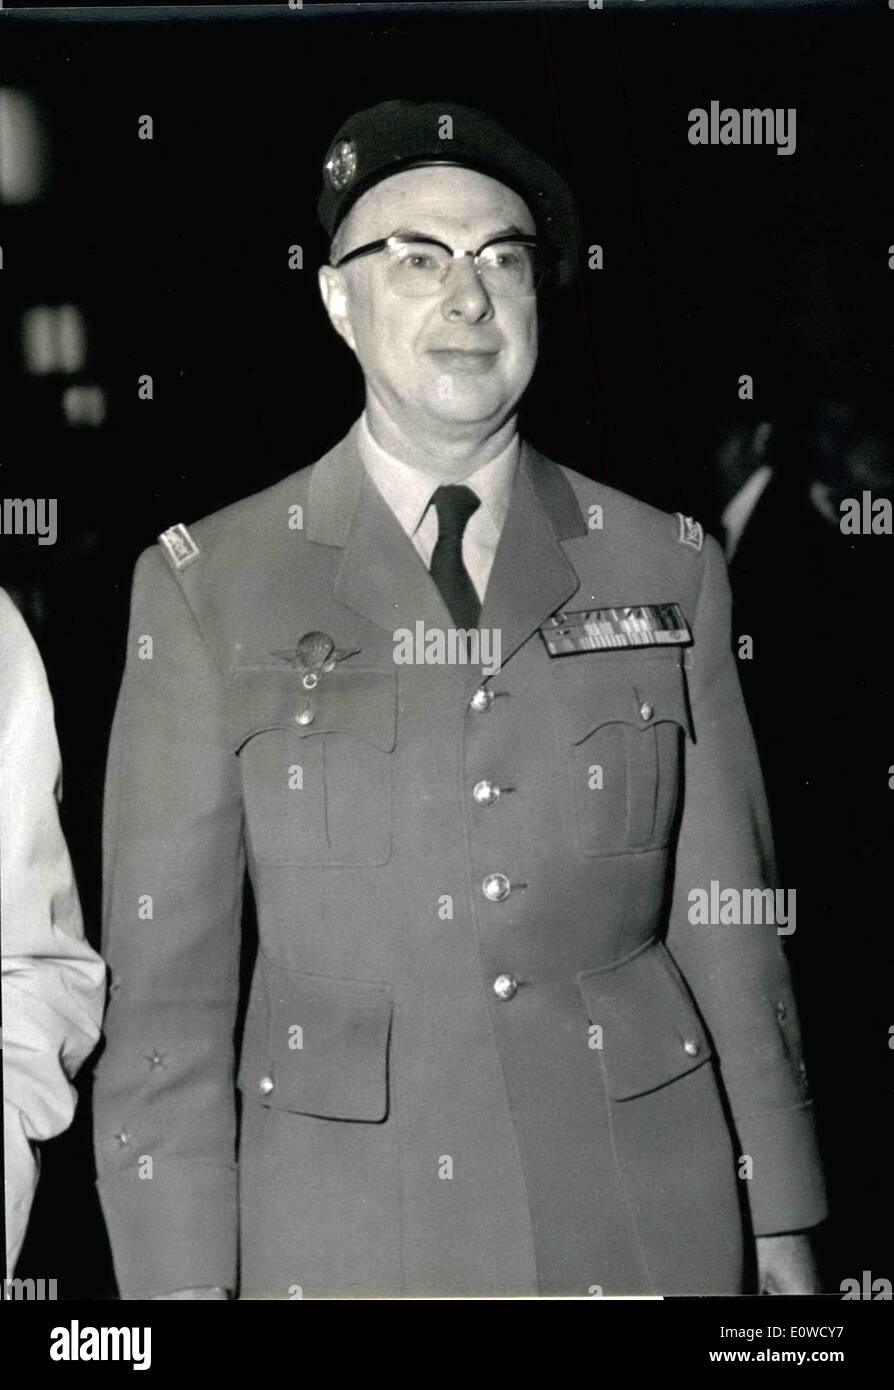 16 maggio 1962 - ex comandante e capo dell'esercito francese in Algeria, Generale Ailleret arrivati in uniforme dei paracadutisti presso il Palazzo di Giustizia di Parigi per la versione di prova di ex generale Raoul Salan. Foto Stock